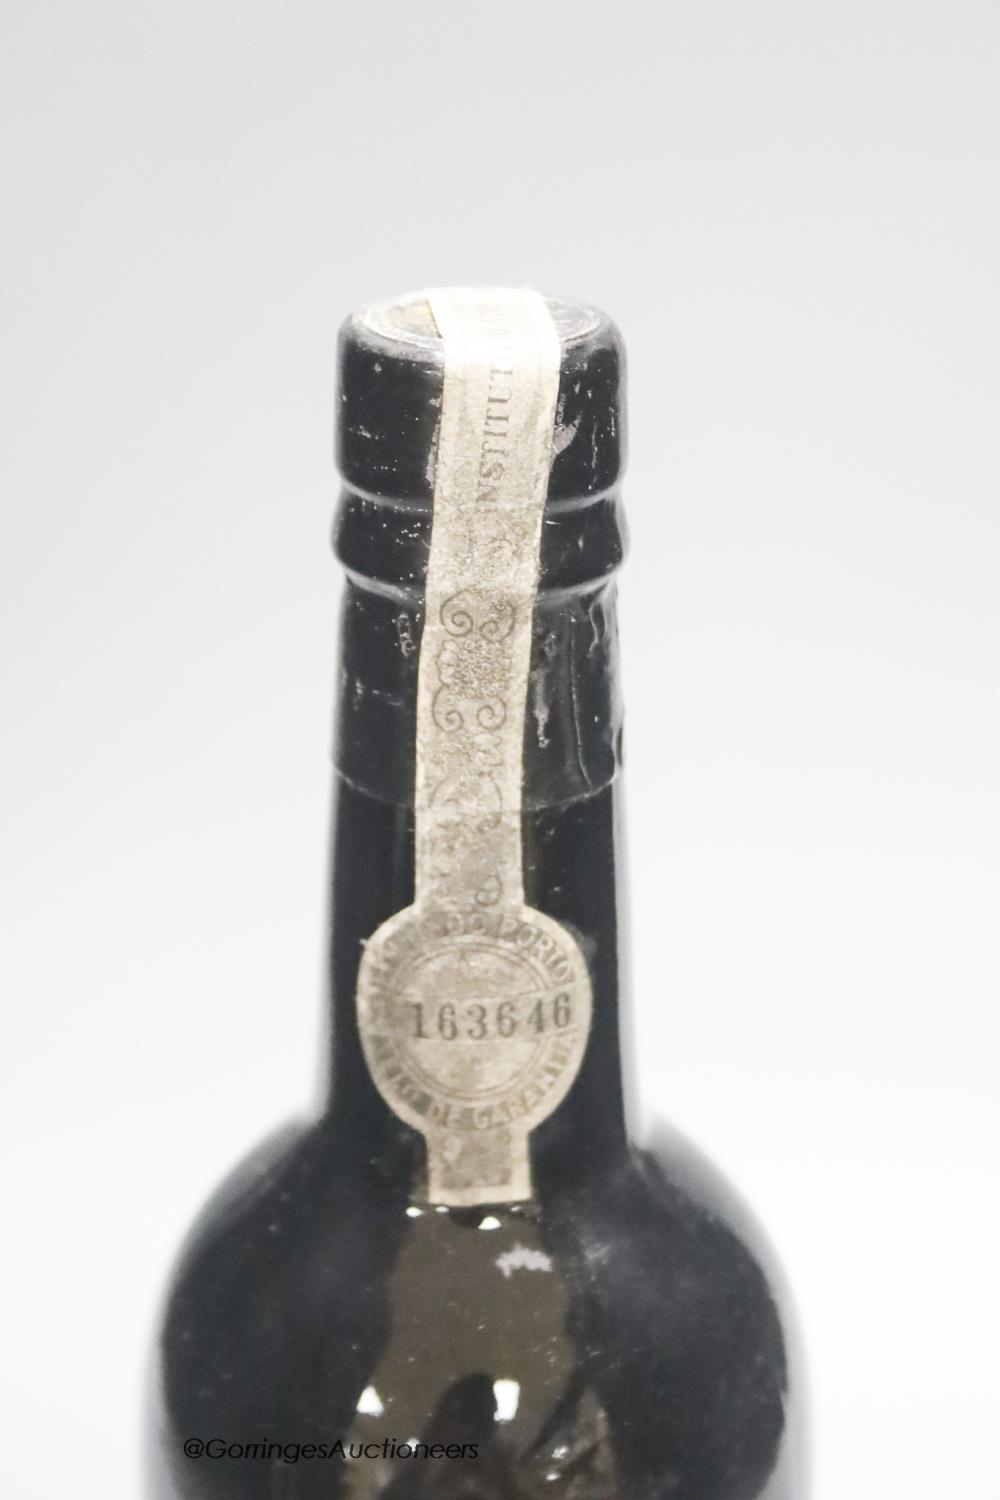 A bottle of 1966 Quinta Do Noval Vintage port - Image 2 of 2